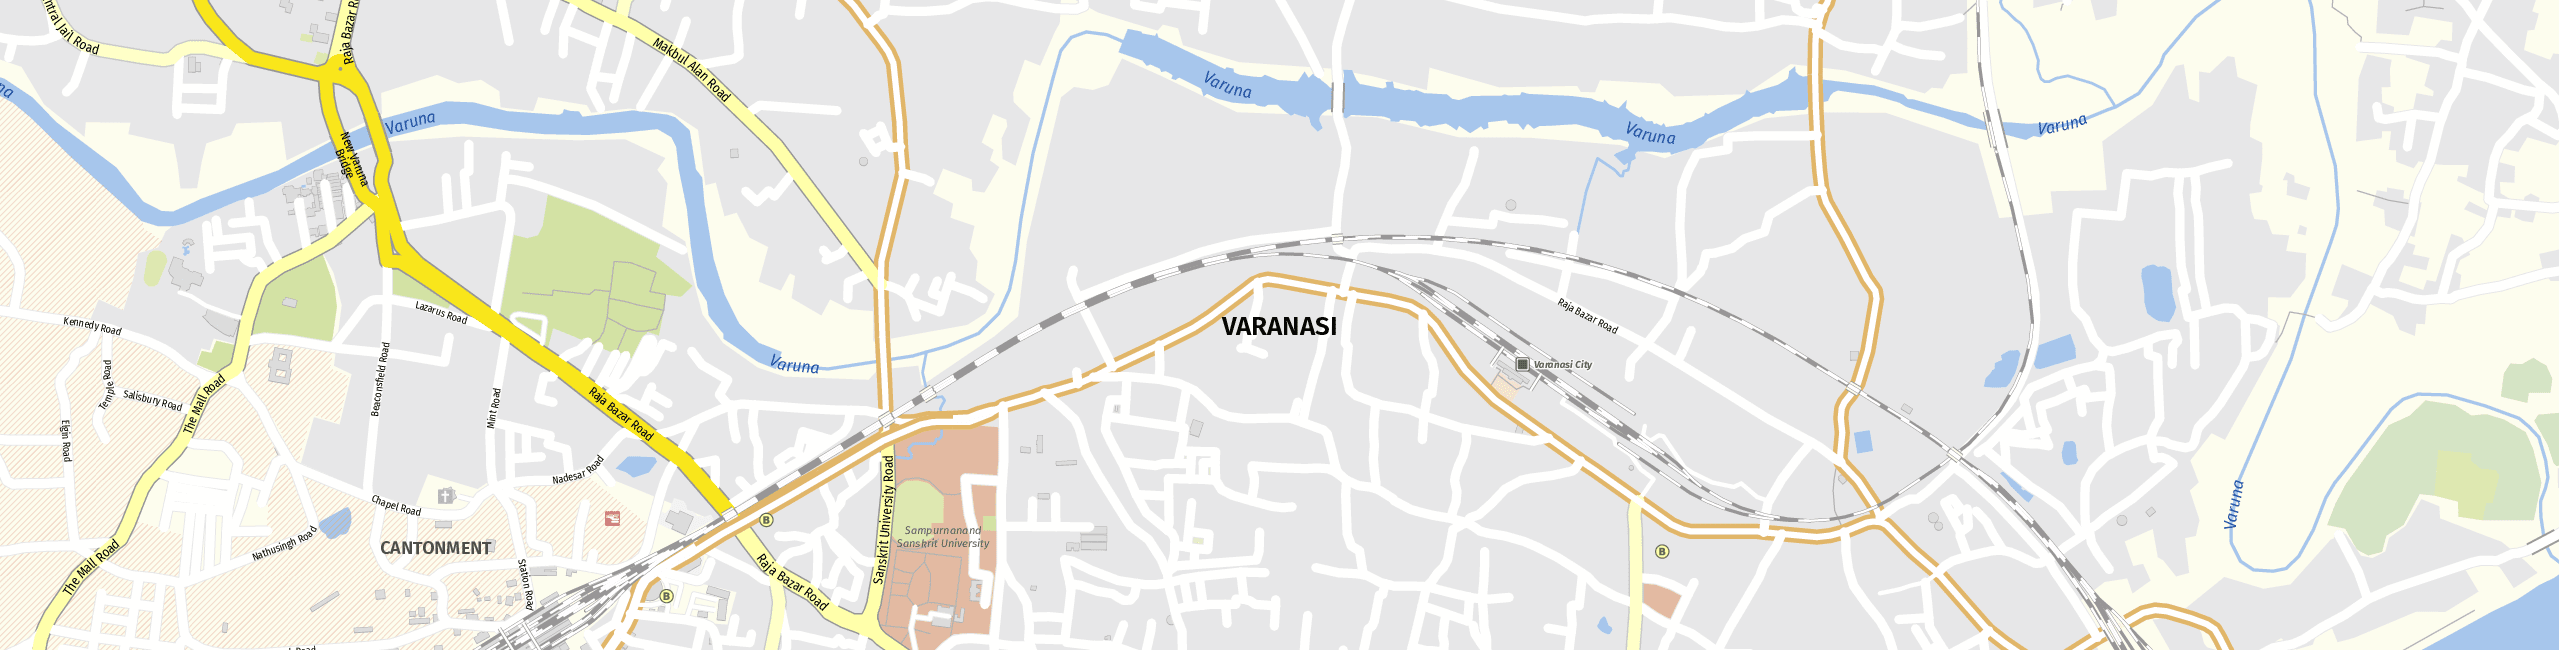 Stadtplan Varanasi zum Downloaden.